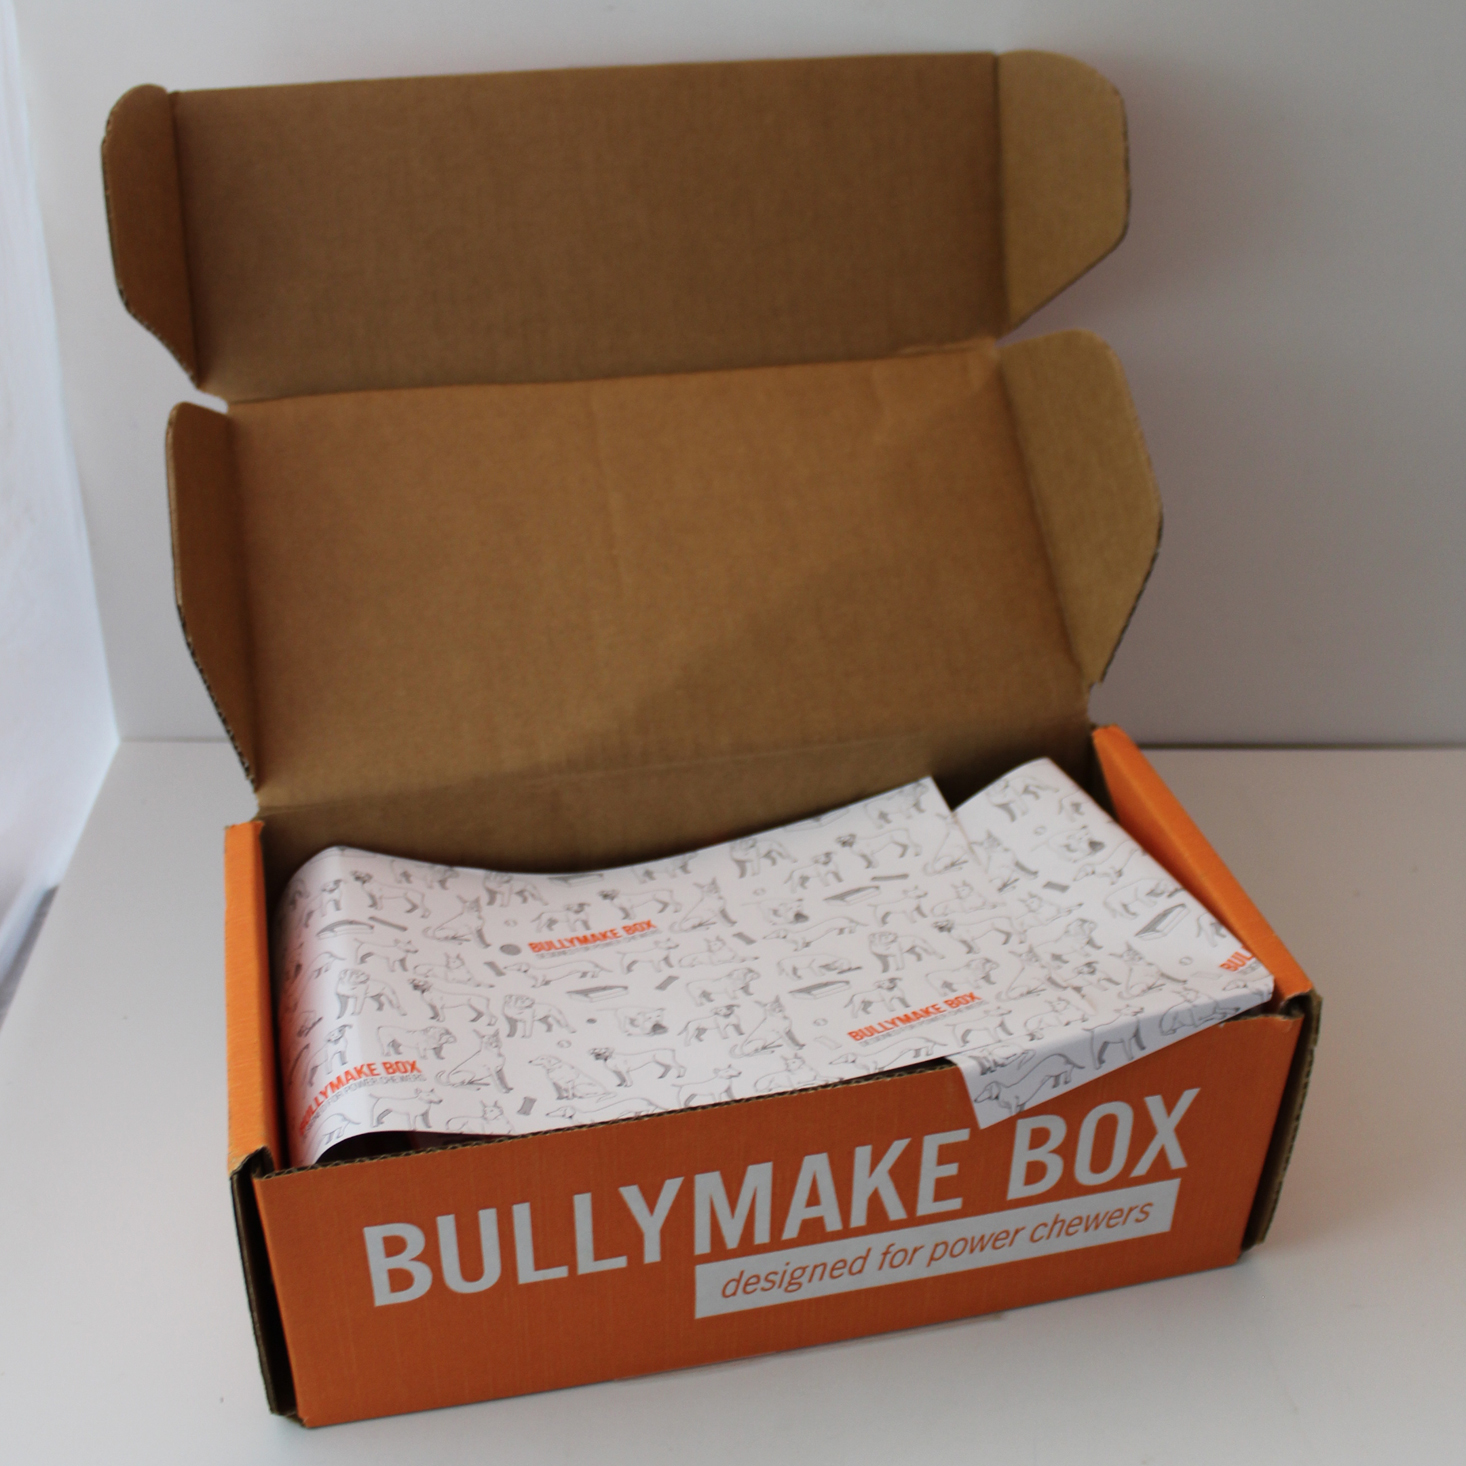 Bullymake Box October 2019 Inside